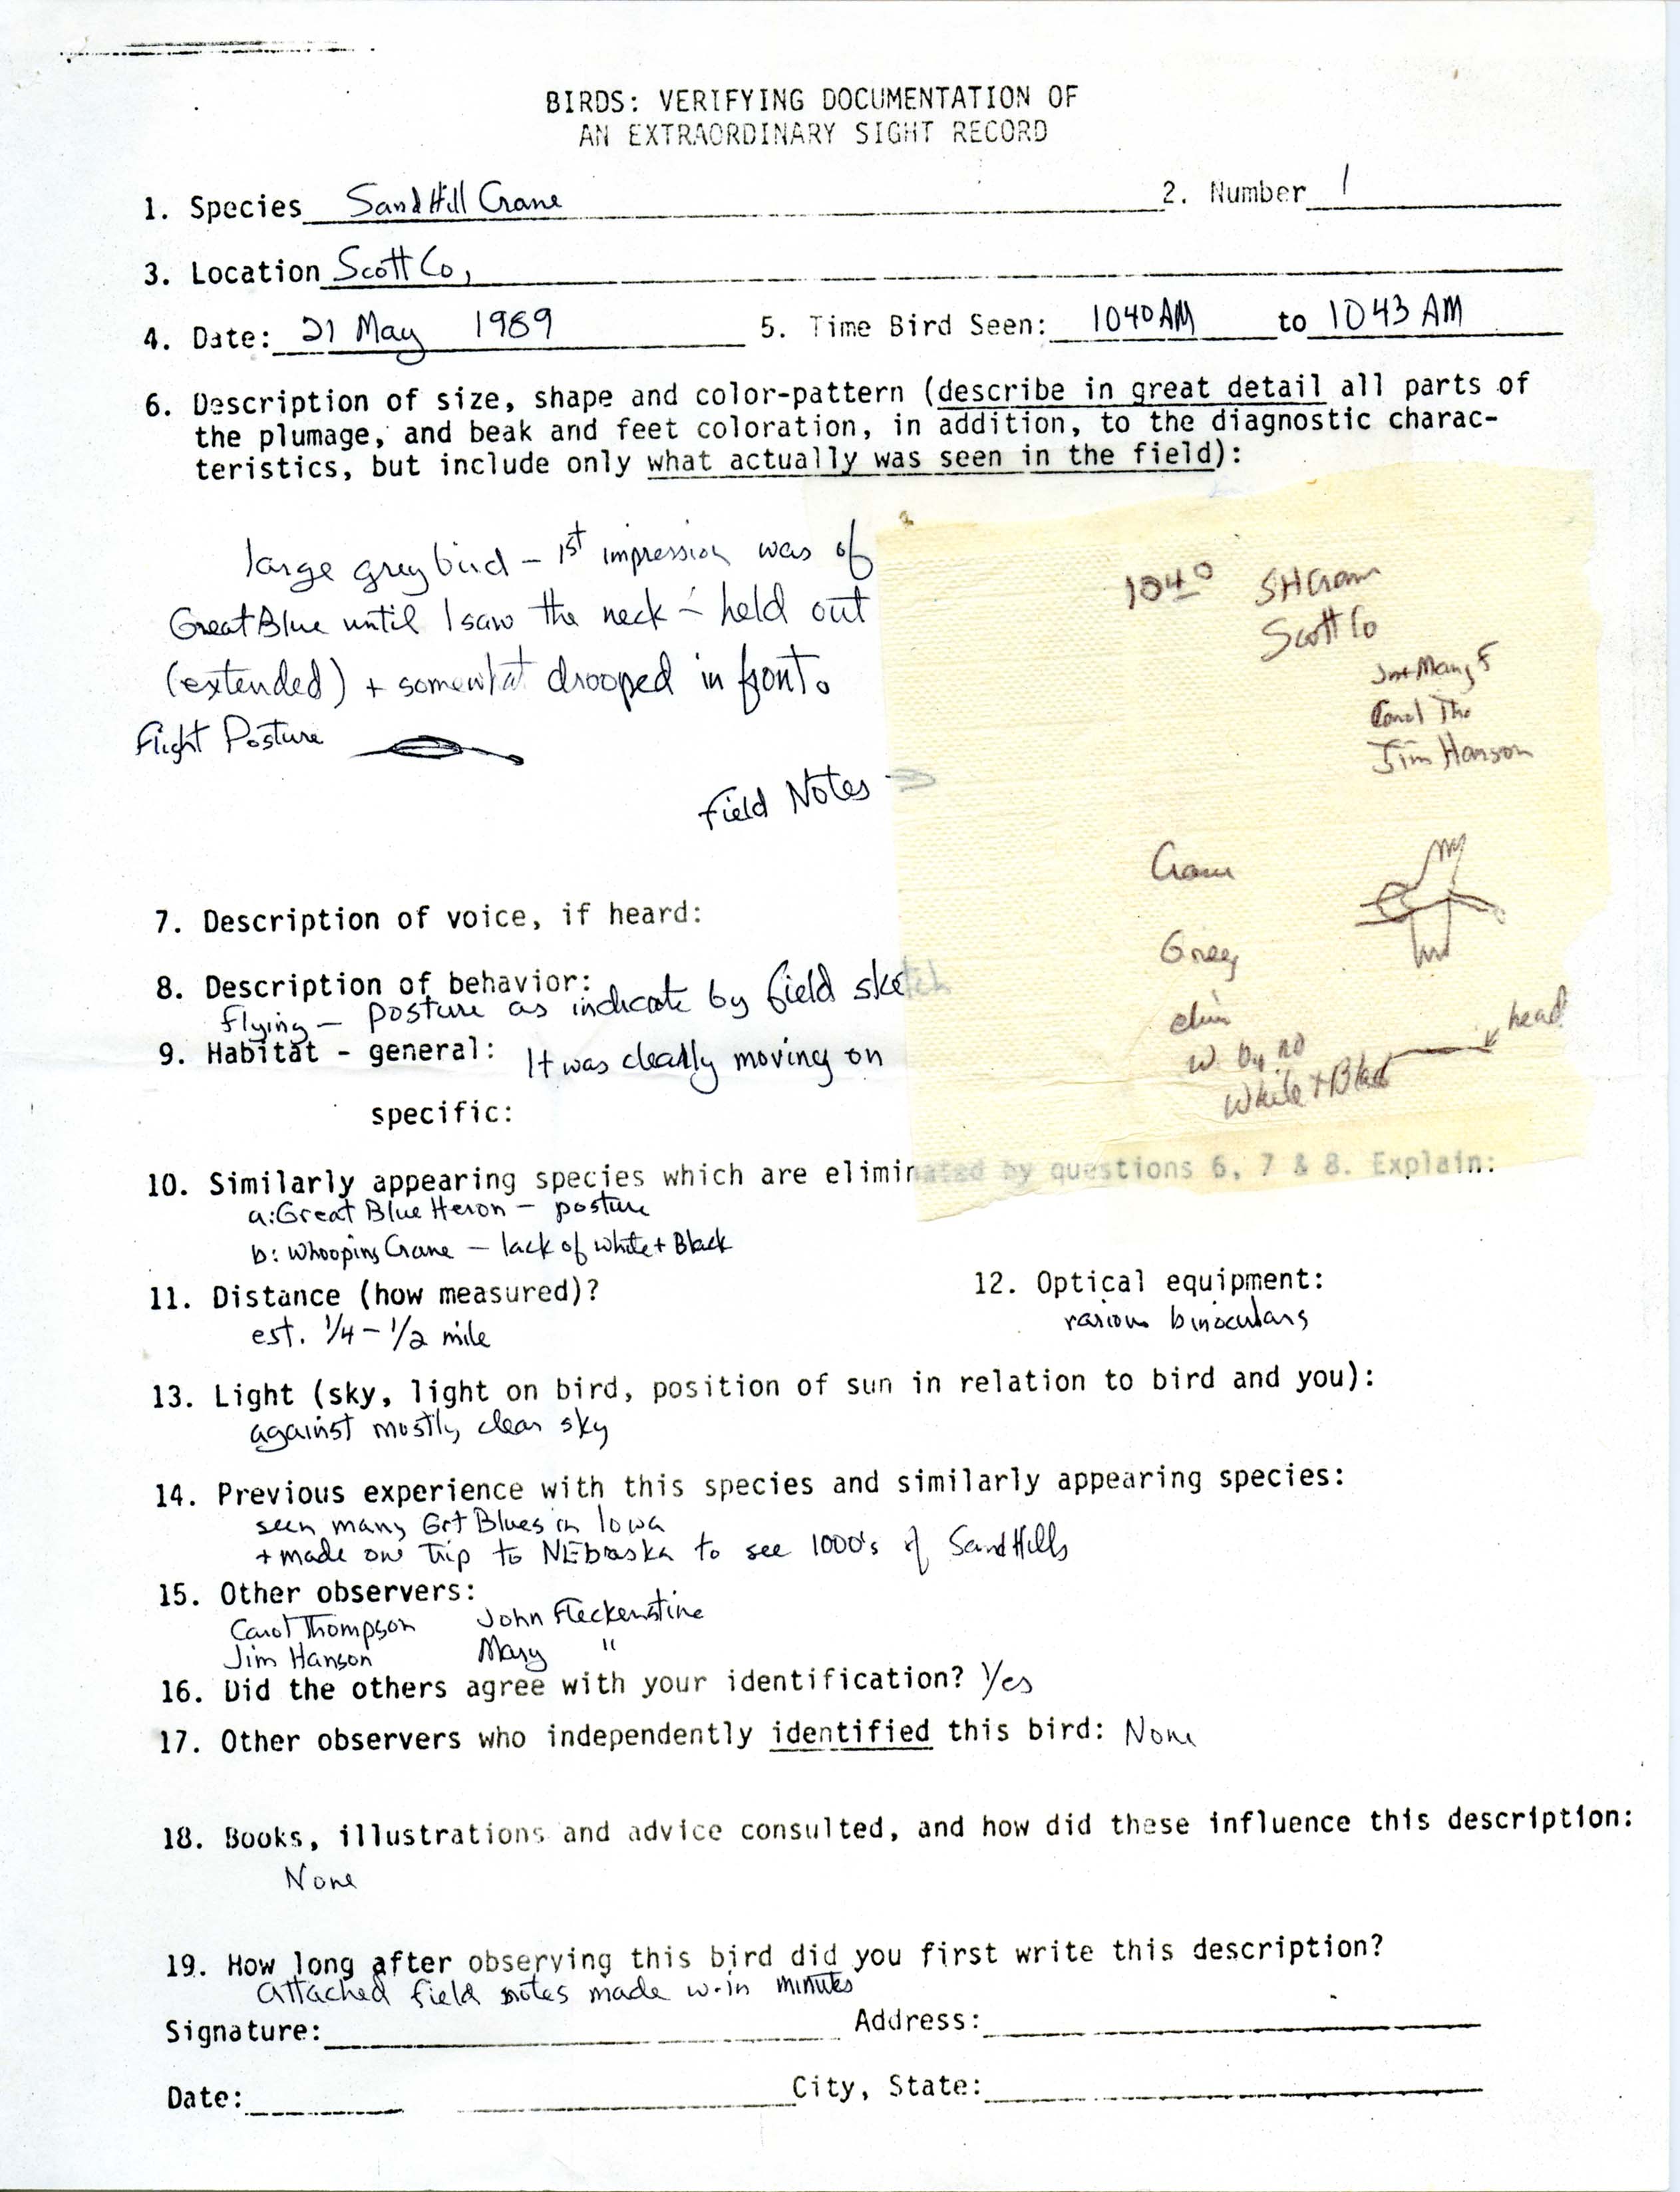 Rare bird documentation form for Sandhill Crane at Scott County, 1989